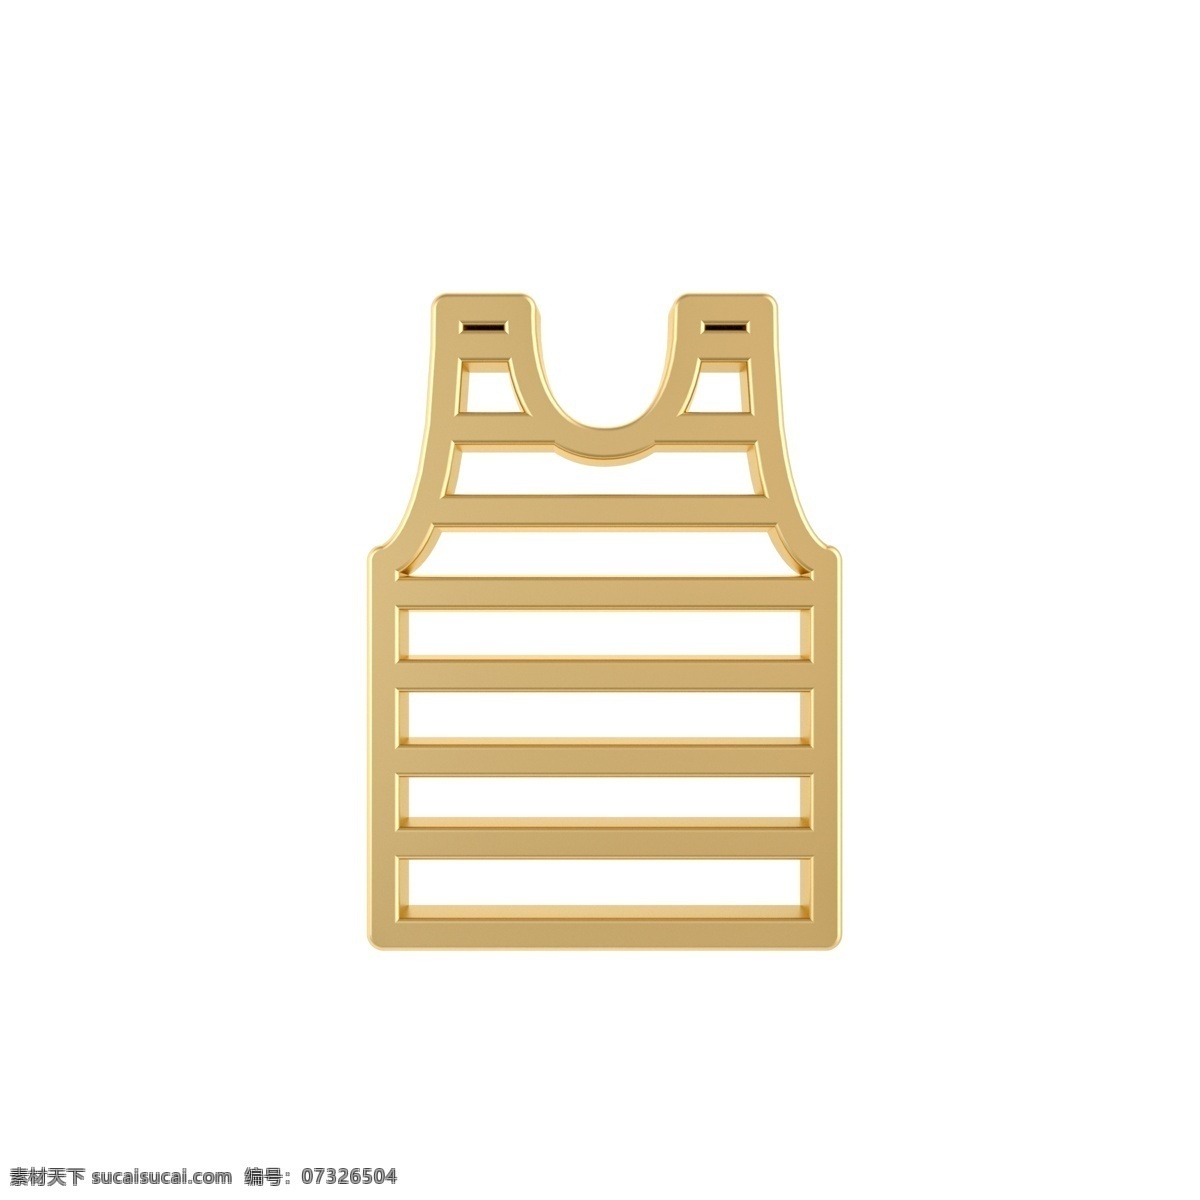 金属 质感 夏日 汗衫 图标 黄金 金属质感 夏季常用图标 立体